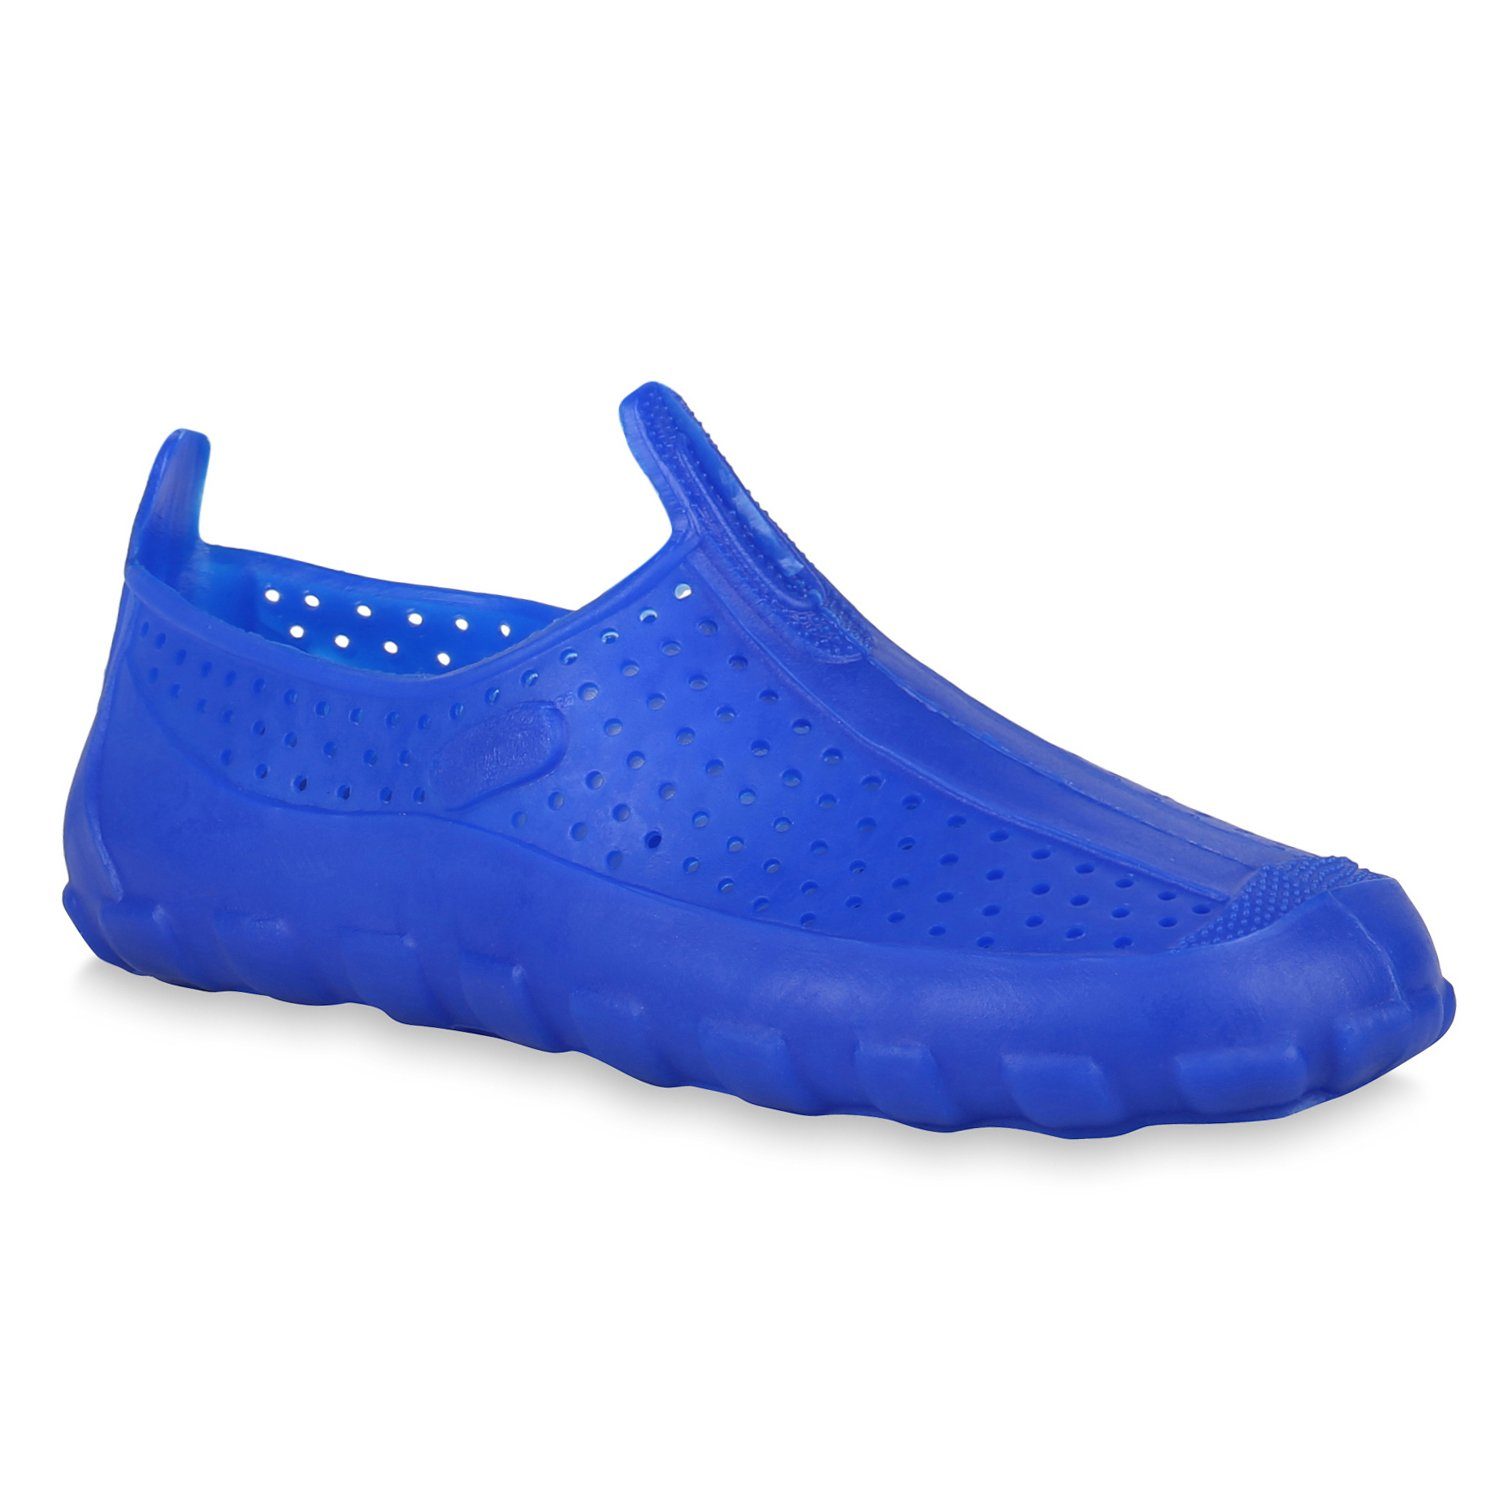 VAN HILL 823145 OB SEA SHOE(Damen) Damen Badeschuhe Badesandale Bequeme Schuhe Blau